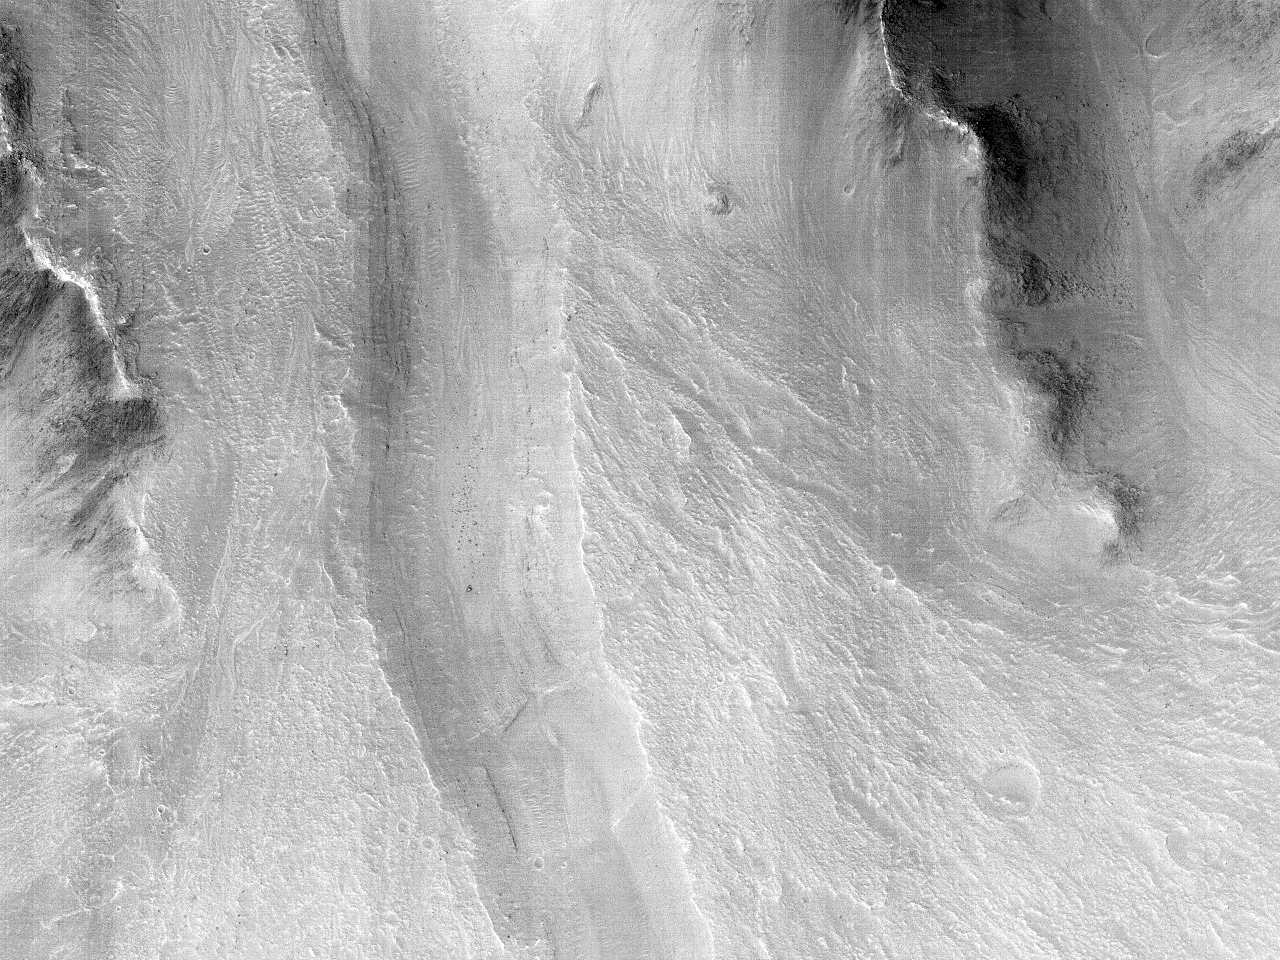 Canal en un abanico sedimentario en Eos Chasma